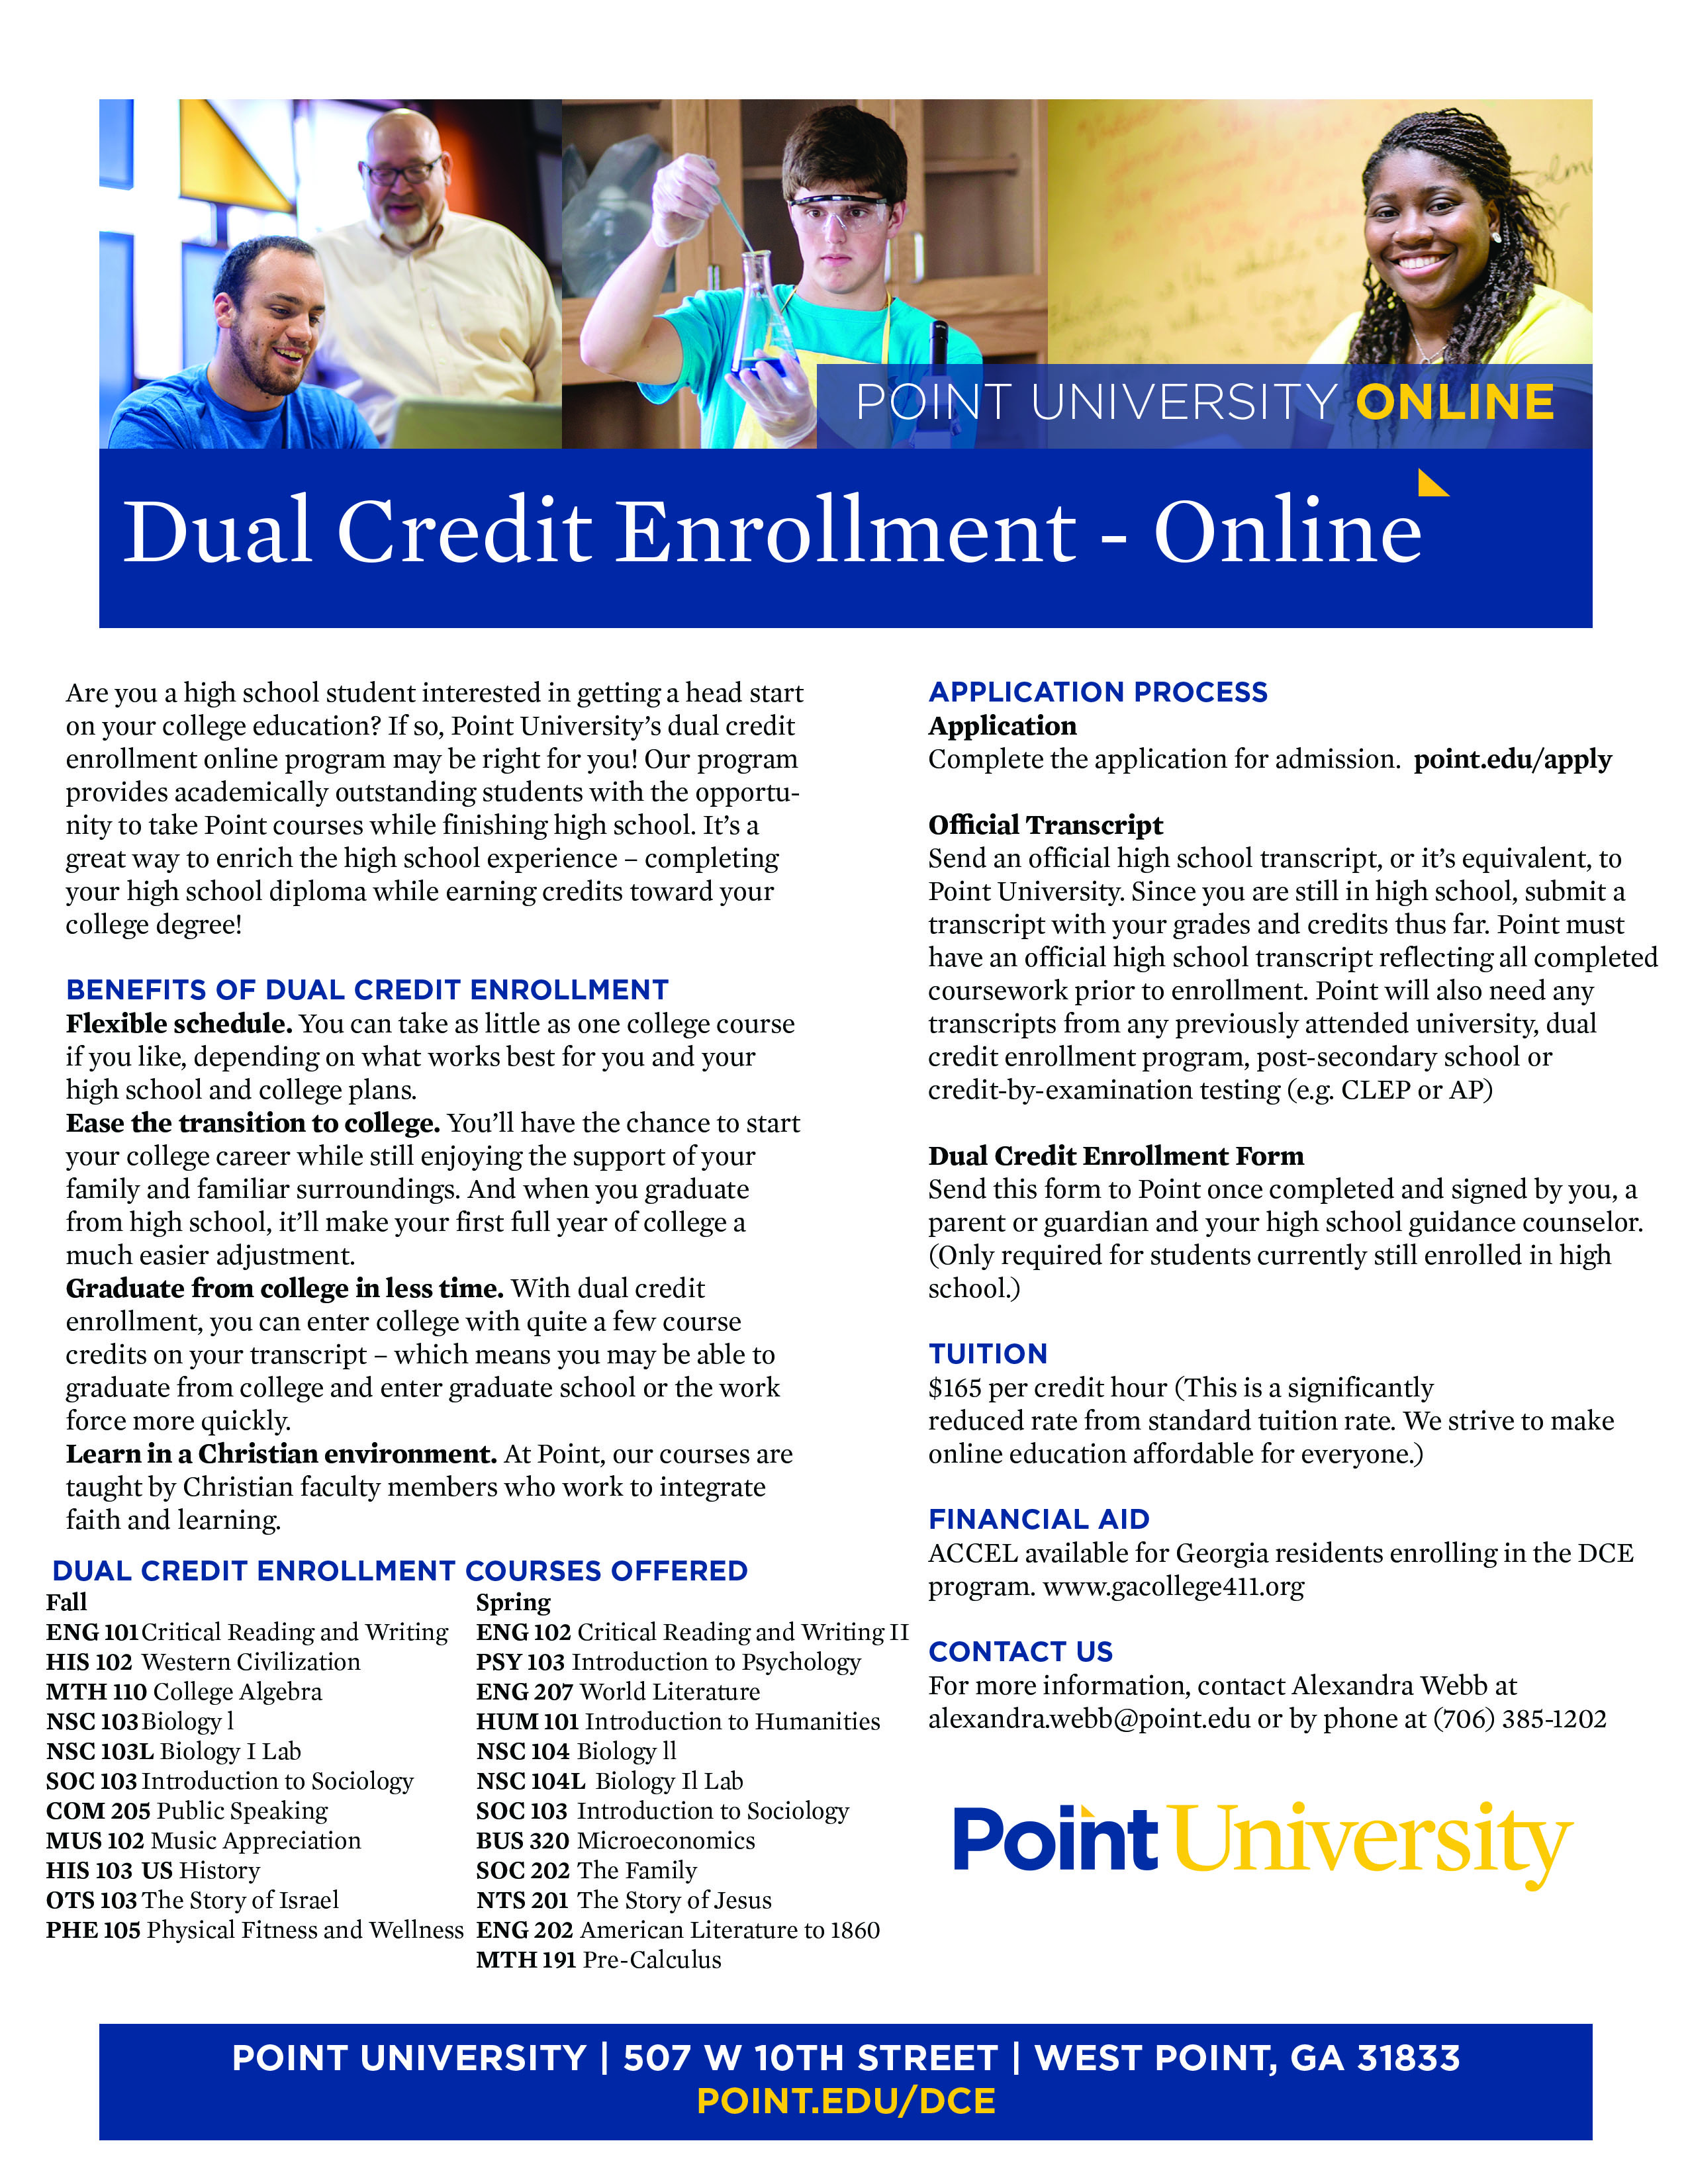 DCE Online Courses pdf Point University